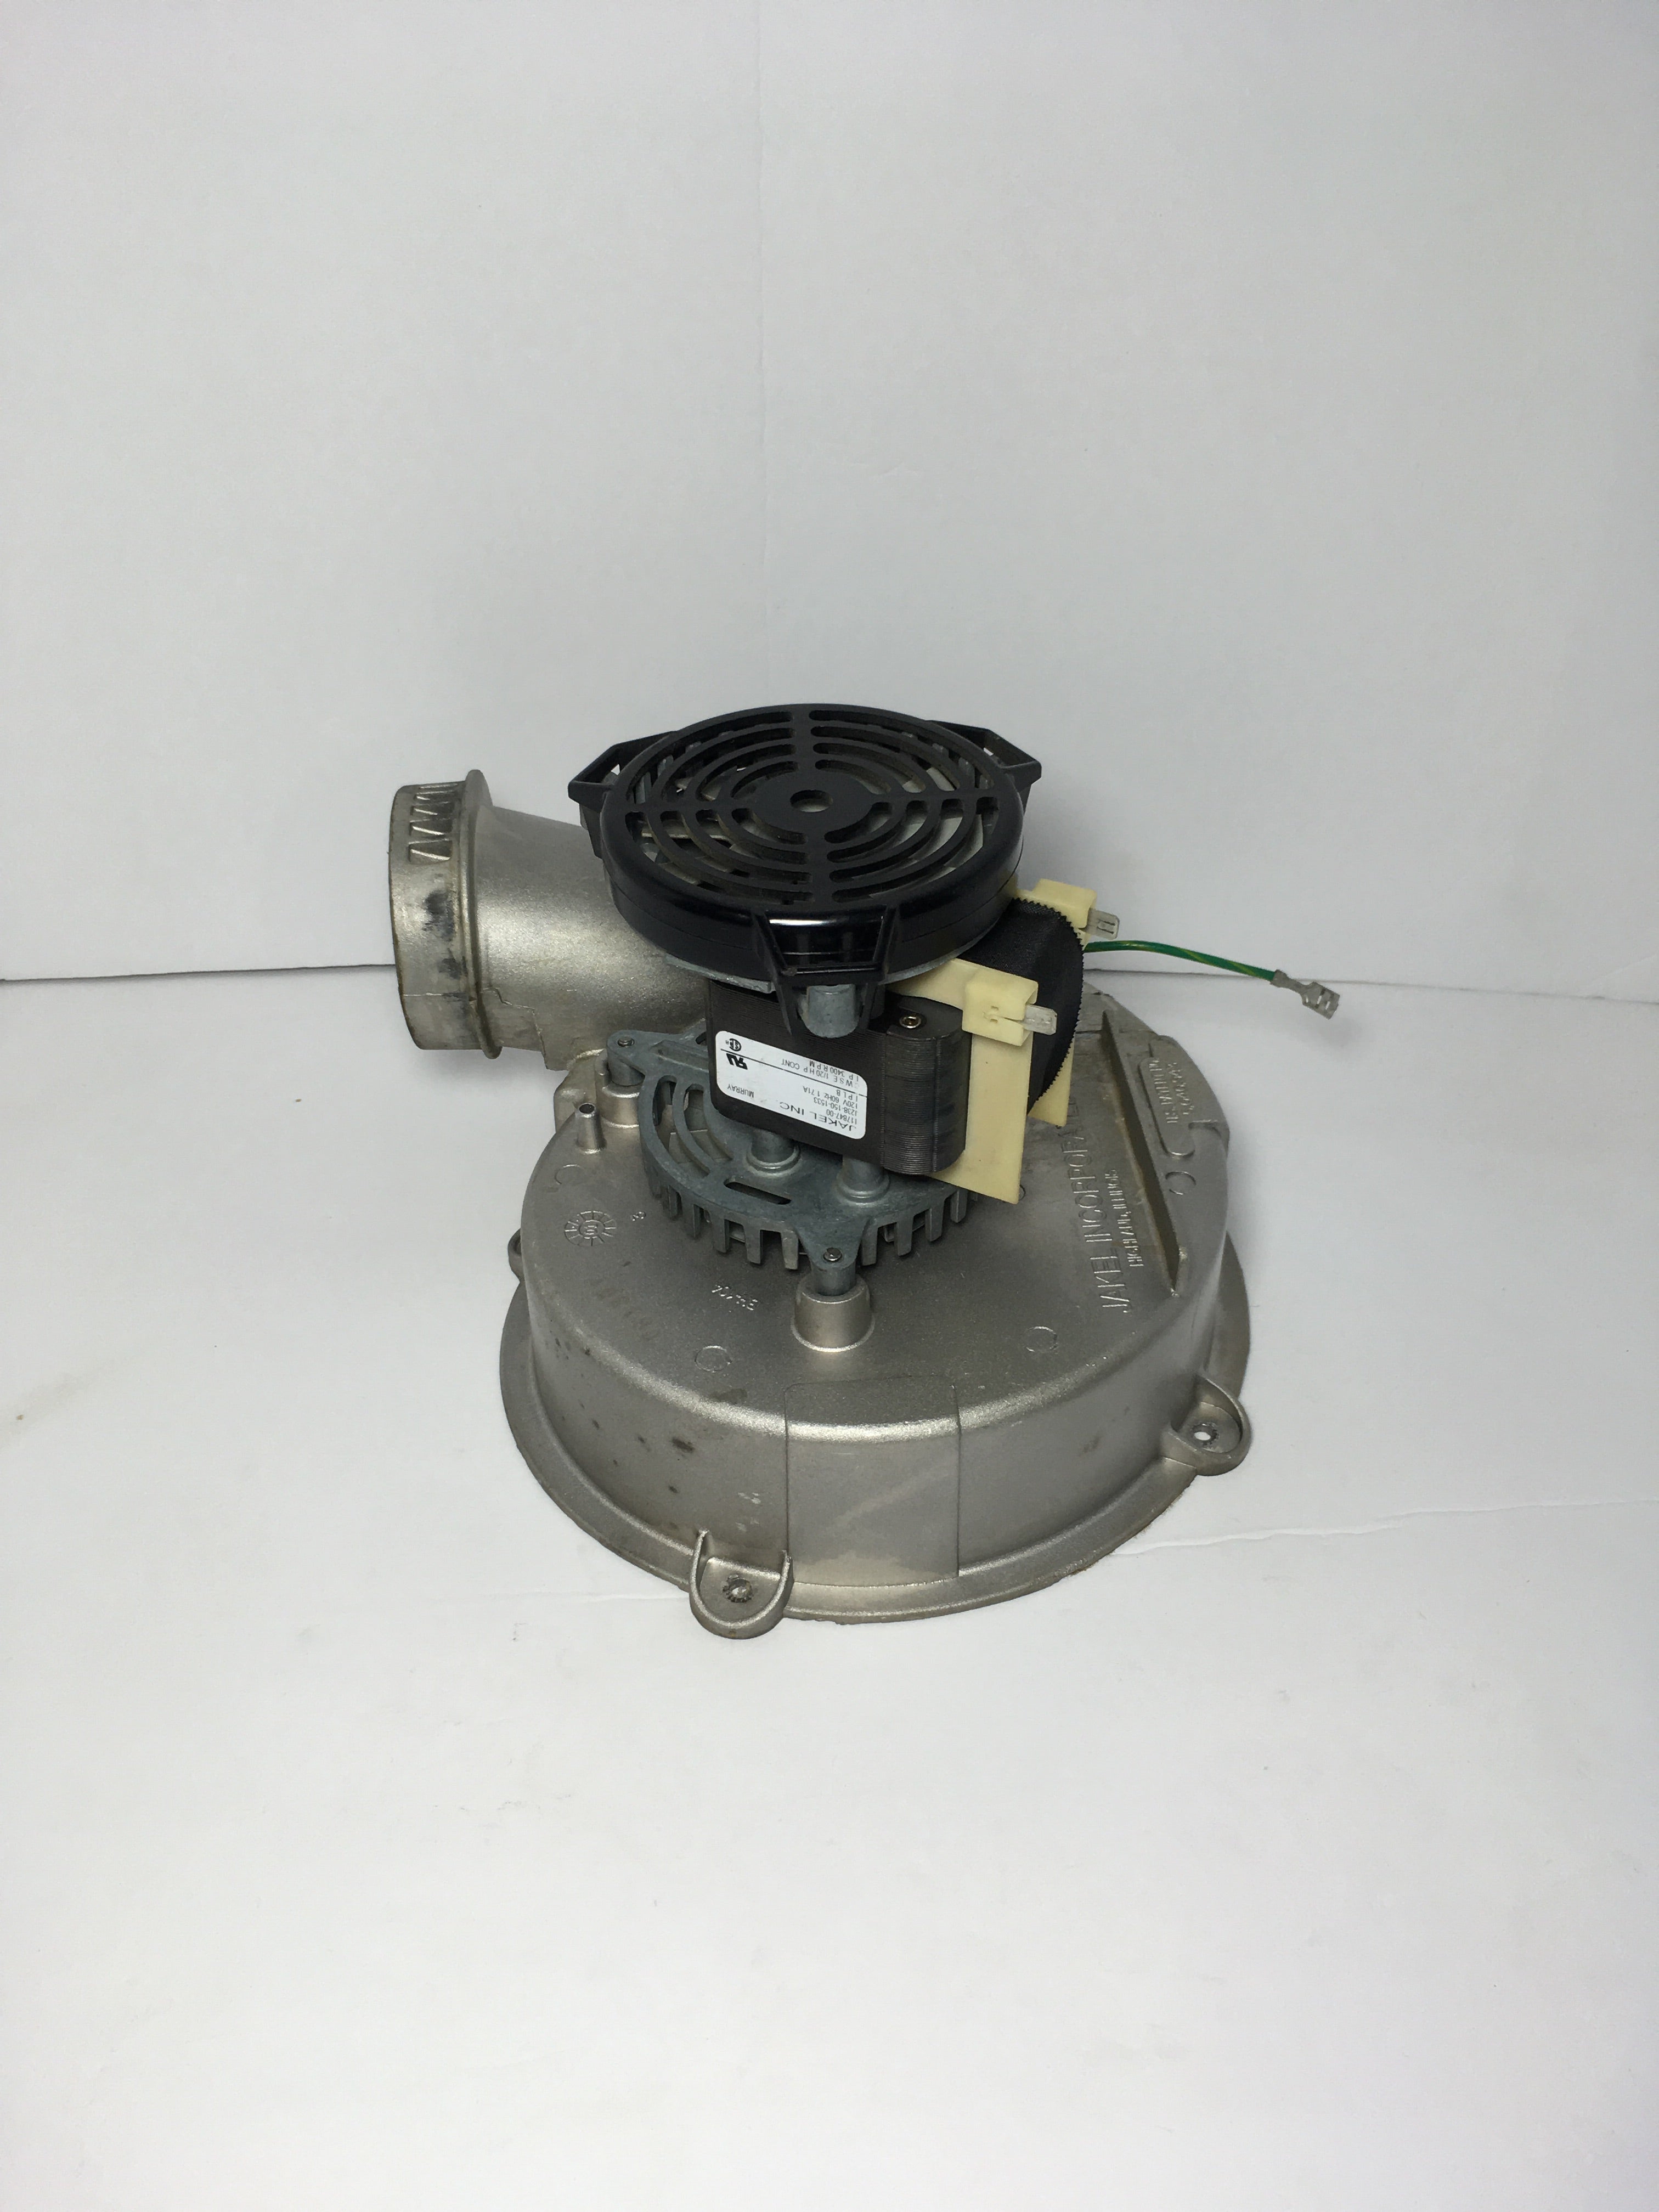 Jakel 117847-00 J238-150-1533 Furnace Blower Motor